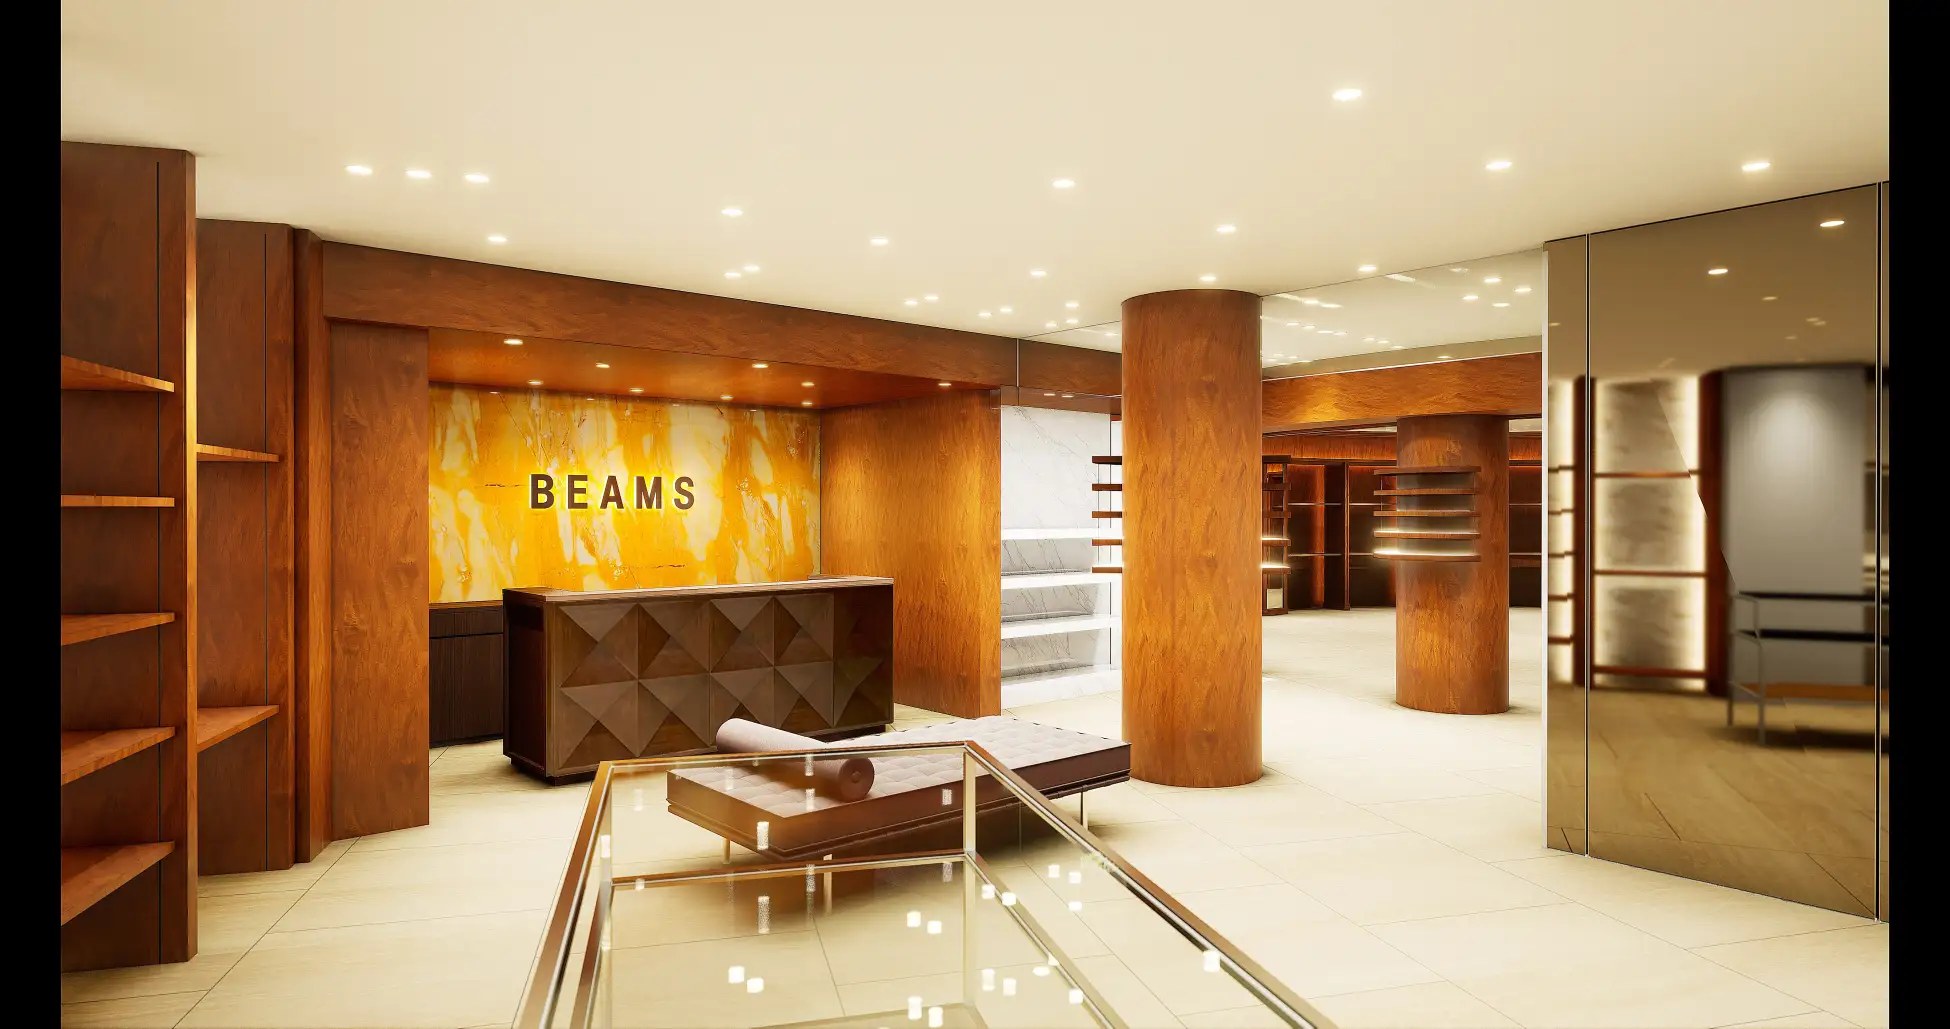 ビームス、4月29日（土）午前11時、都内最大級旗艦店「ビームス 六本木ヒルズ」が、新ショップコンセプト“The Premium”を掲げてリニューアルオープンすることを発表